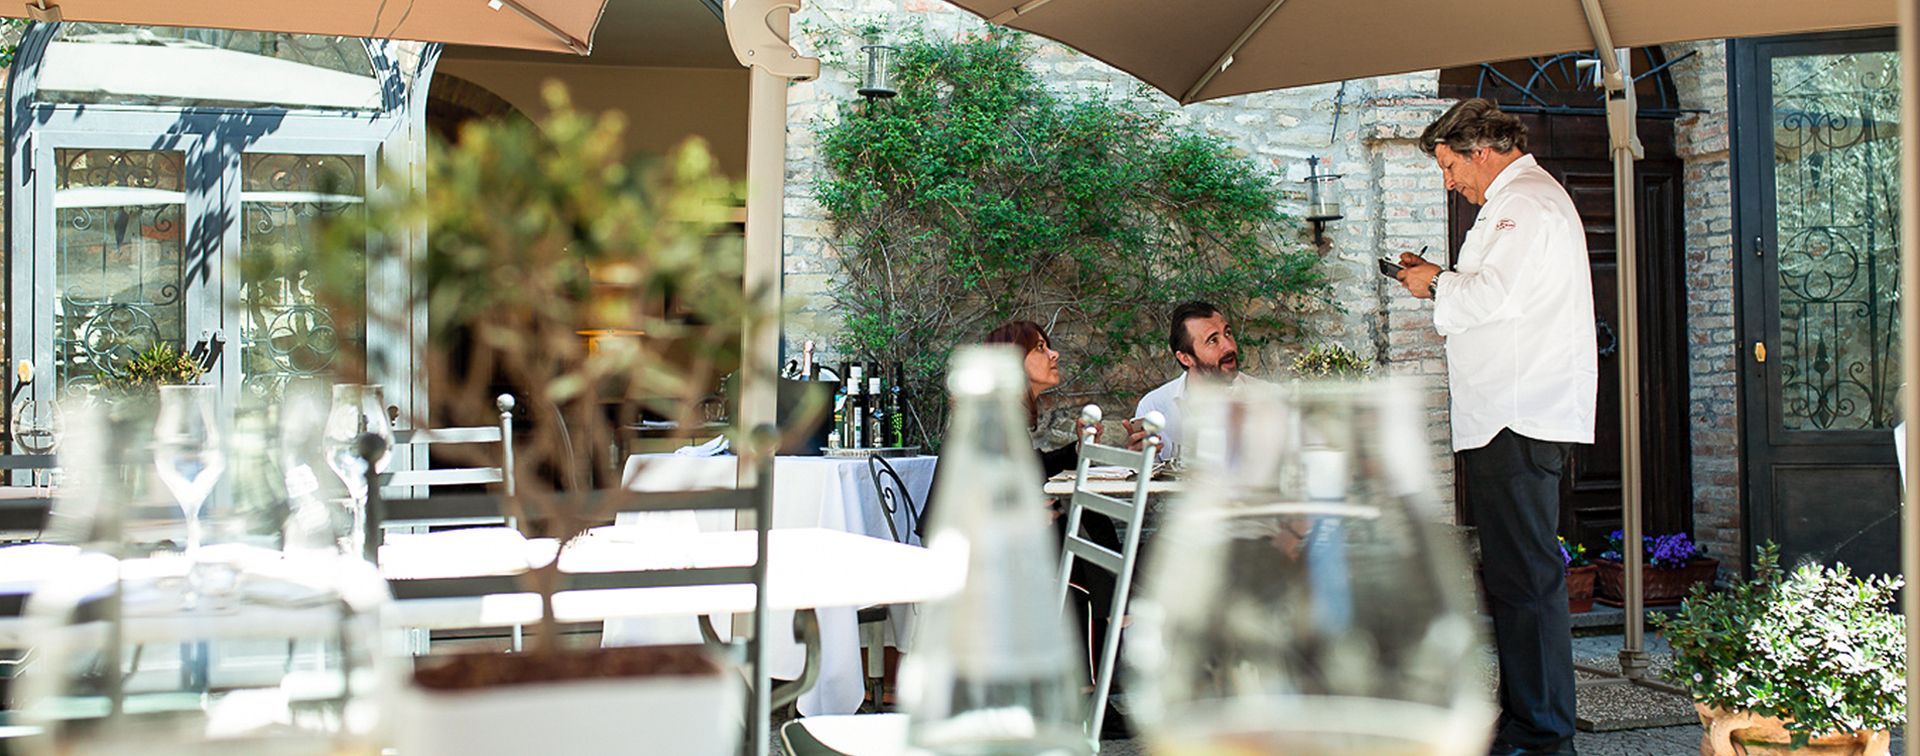 Regalati un'Experience Gourmet con lo Chef Giancarlo Polito. Sharing Restaurant Tipico Osteria & Locanda del Capitano a Montone, Perugia, Umbria